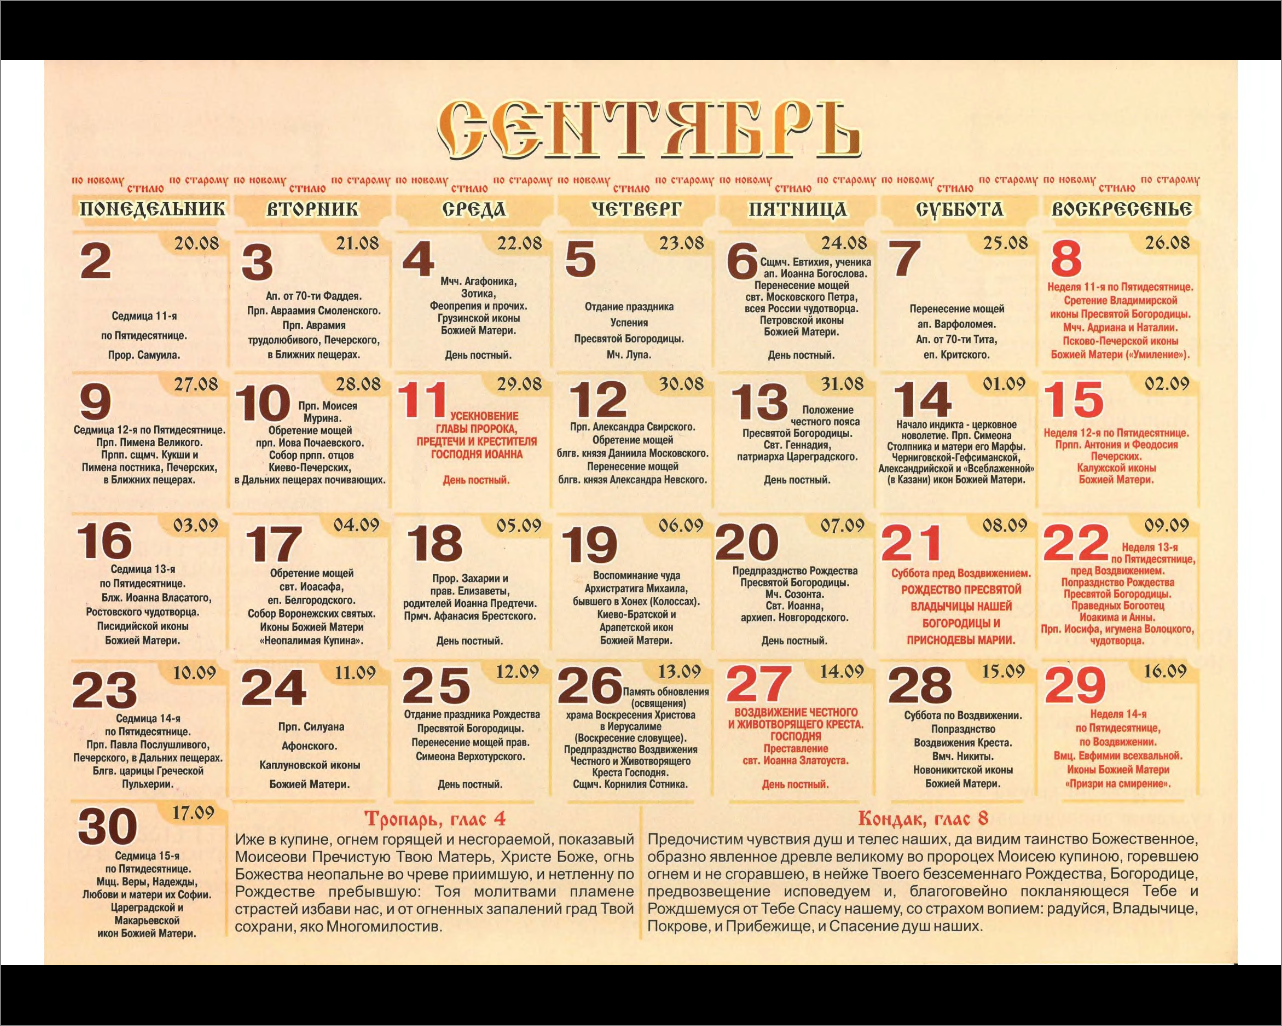 Имена в апреле по православному календарю. Имена по православному календарю. Православный календарь имен. Православный календарь святых по именам.